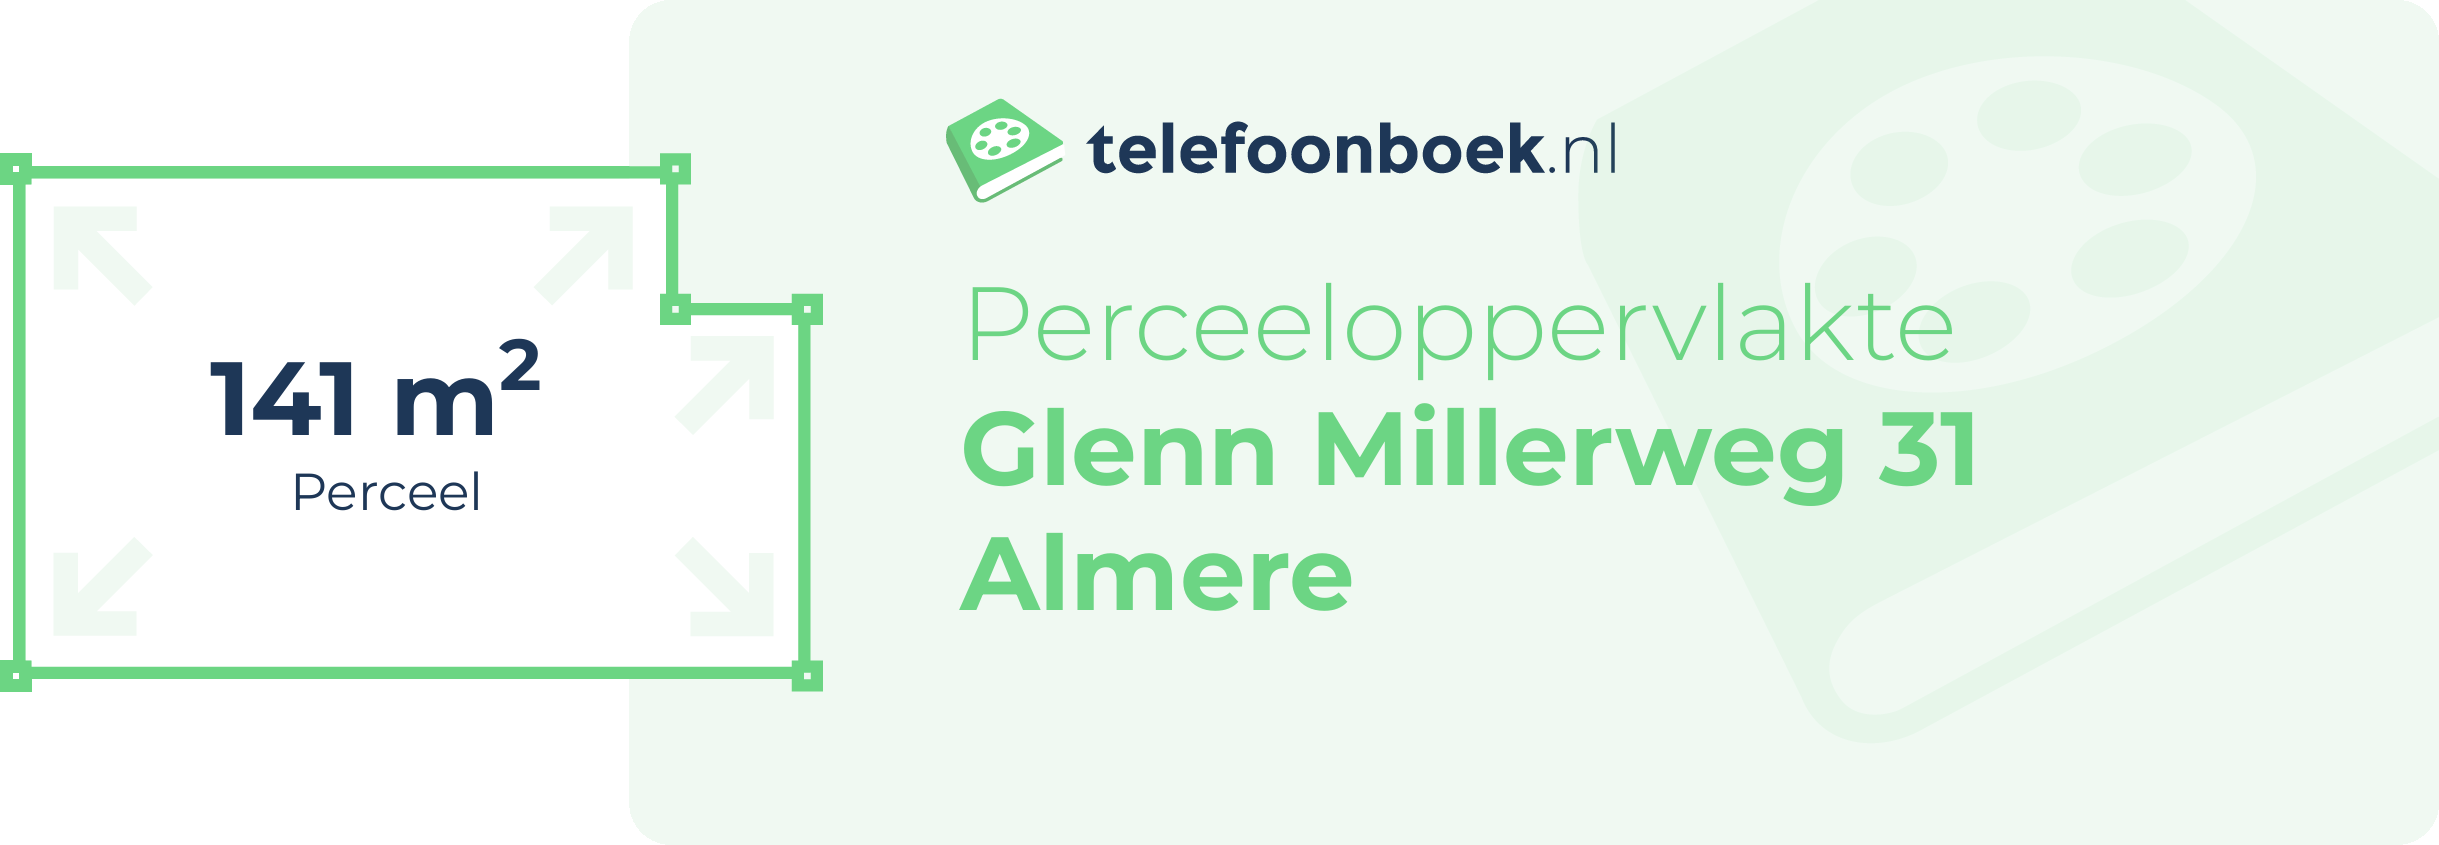 Perceeloppervlakte Glenn Millerweg 31 Almere